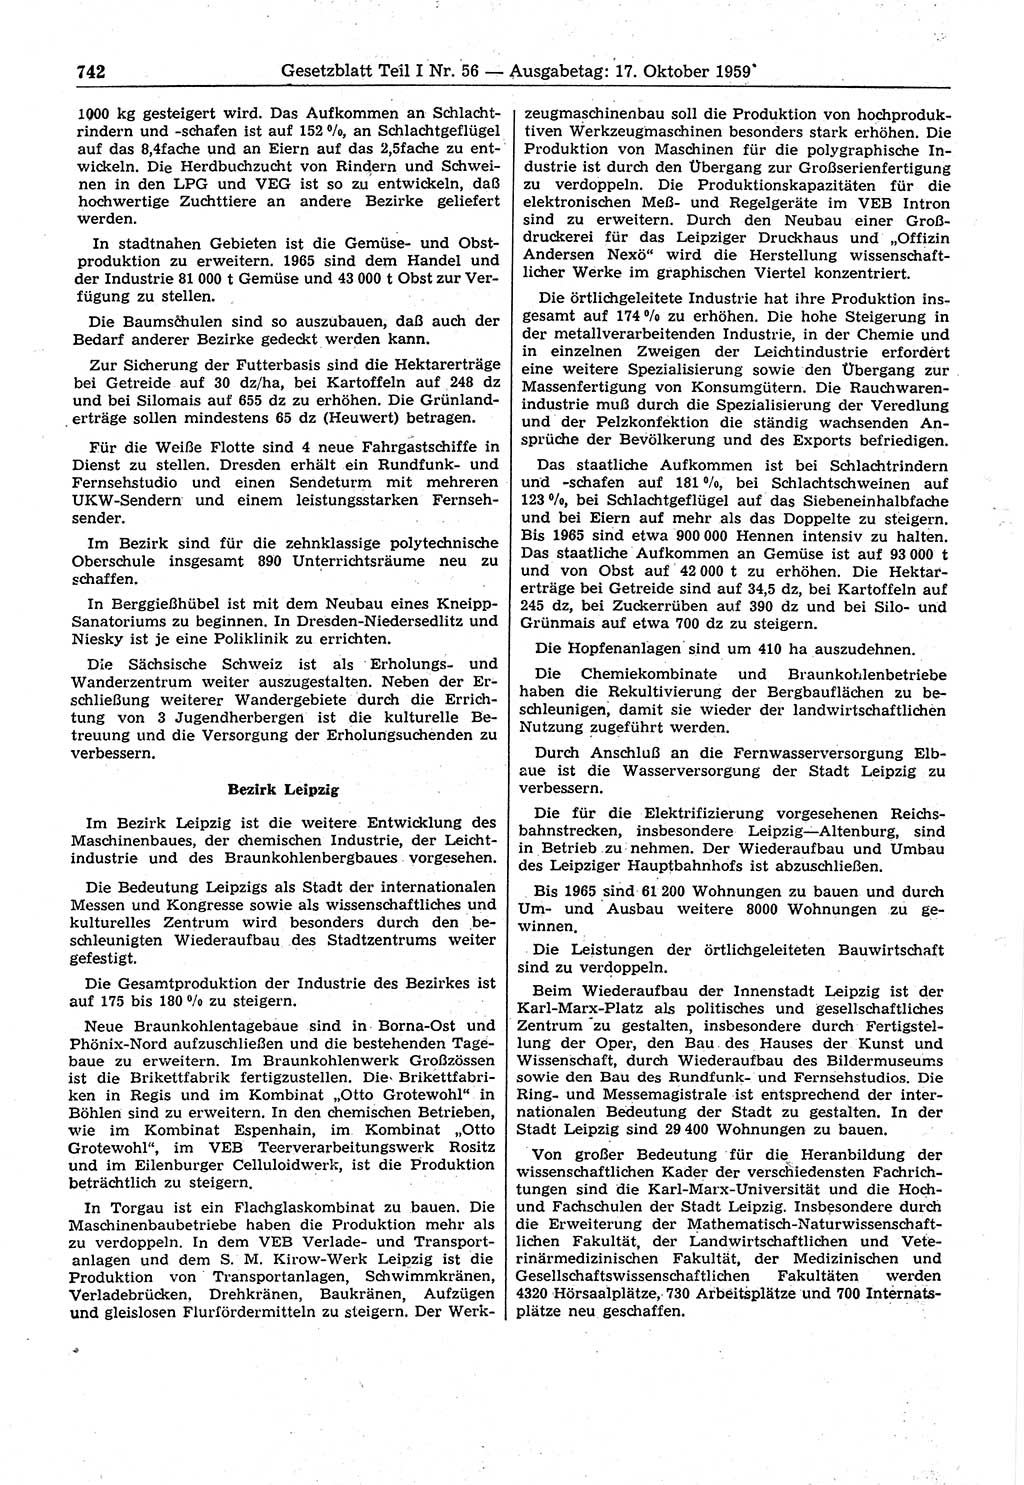 Gesetzblatt (GBl.) der Deutschen Demokratischen Republik (DDR) Teil Ⅰ 1959, Seite 742 (GBl. DDR Ⅰ 1959, S. 742)